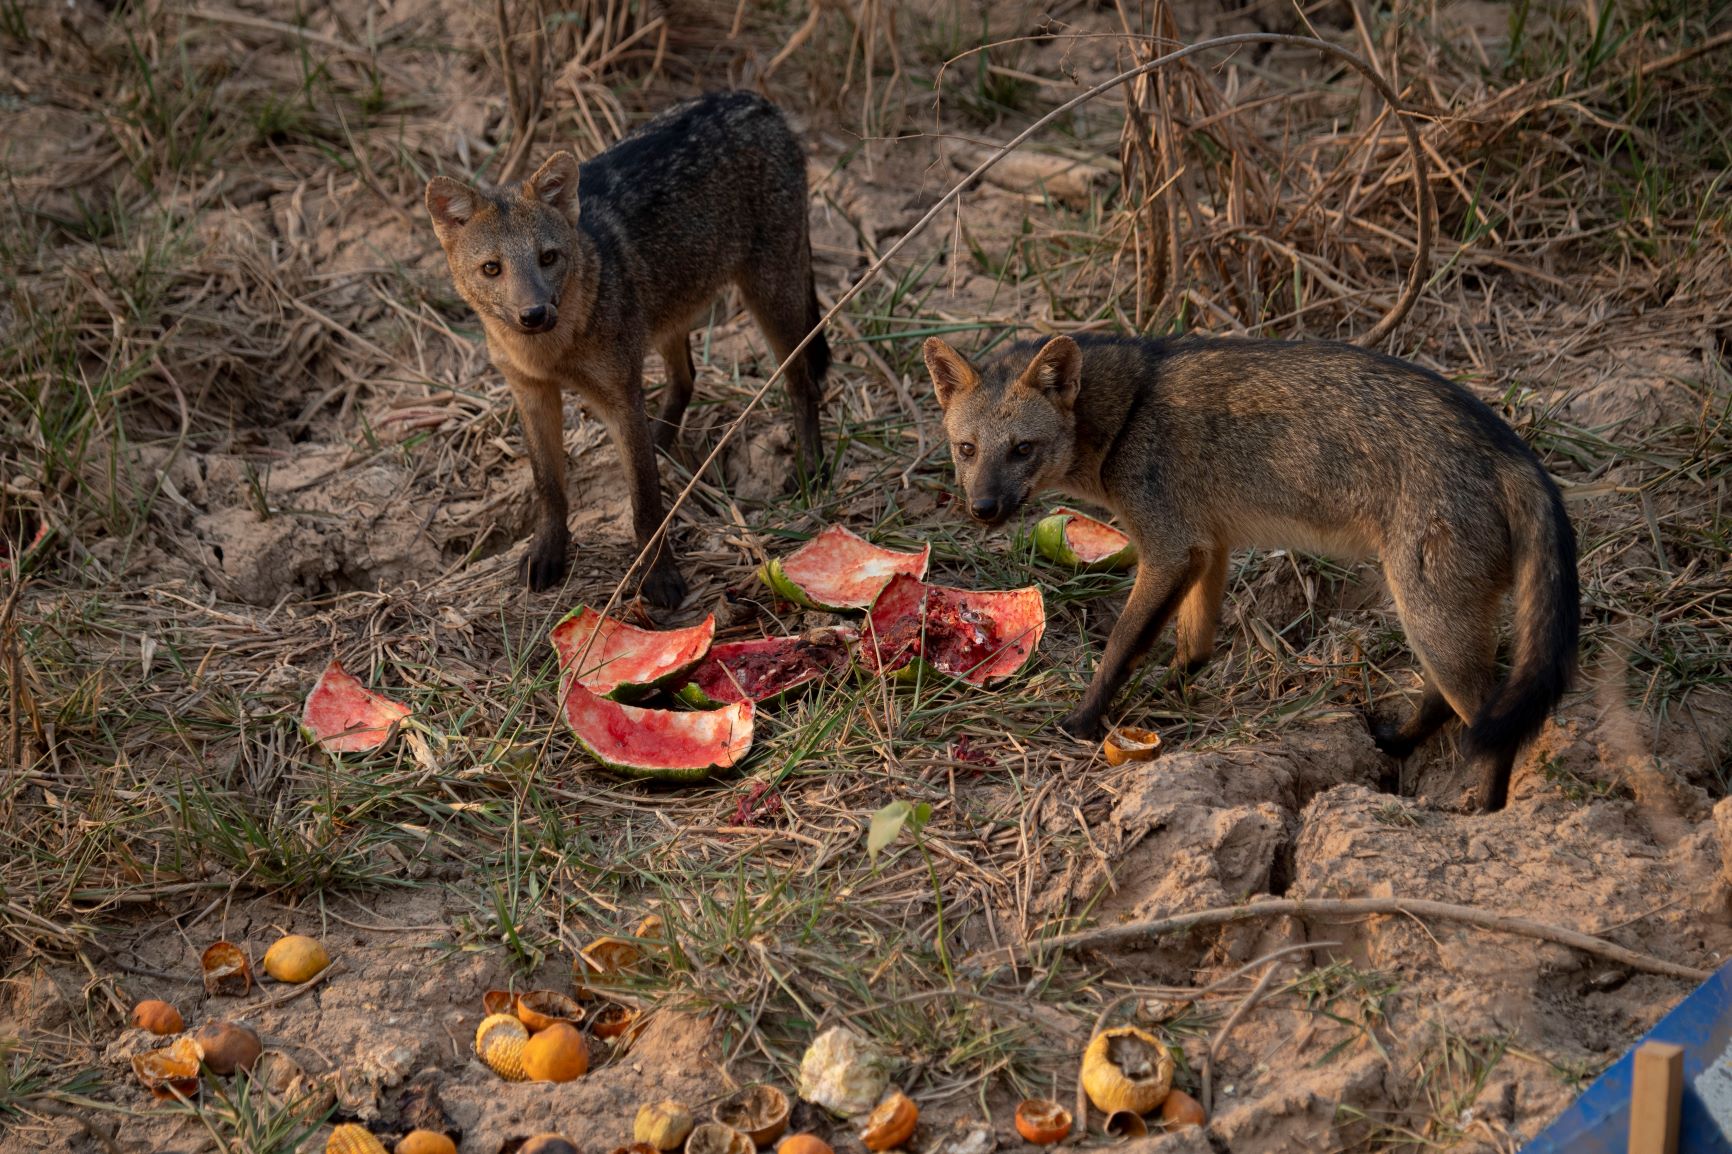 Raposas-do-campo aproveitam melancias deixadas por voluntários: fome e desidratação ameaçam animais (Foto: Mauro Pimentel/AFP)